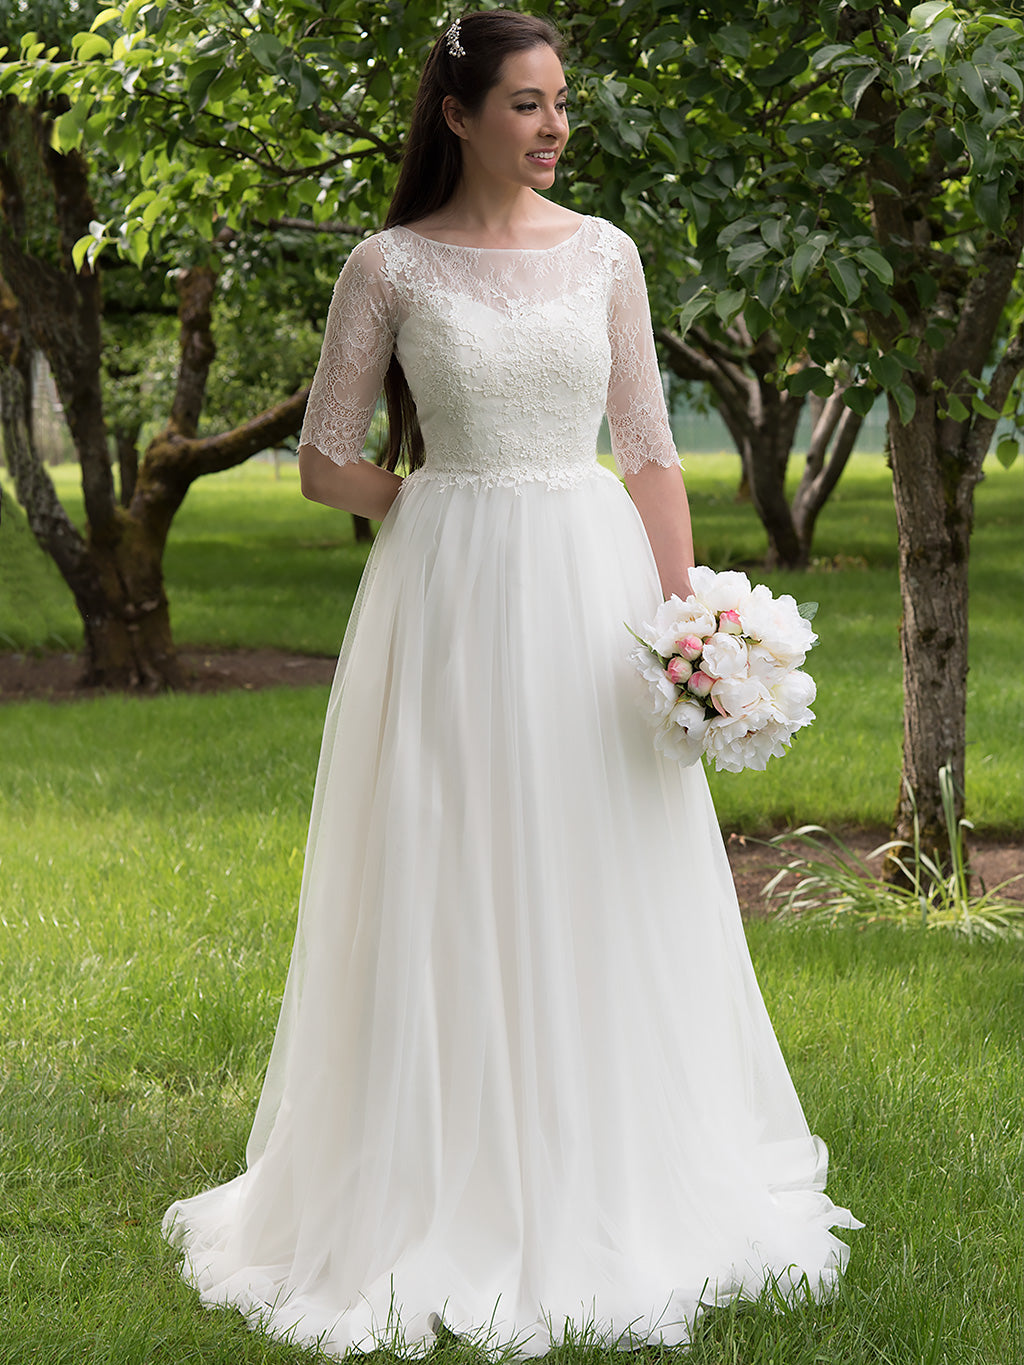 Ivory 3/4 length sleeve lace wedding dress 4011